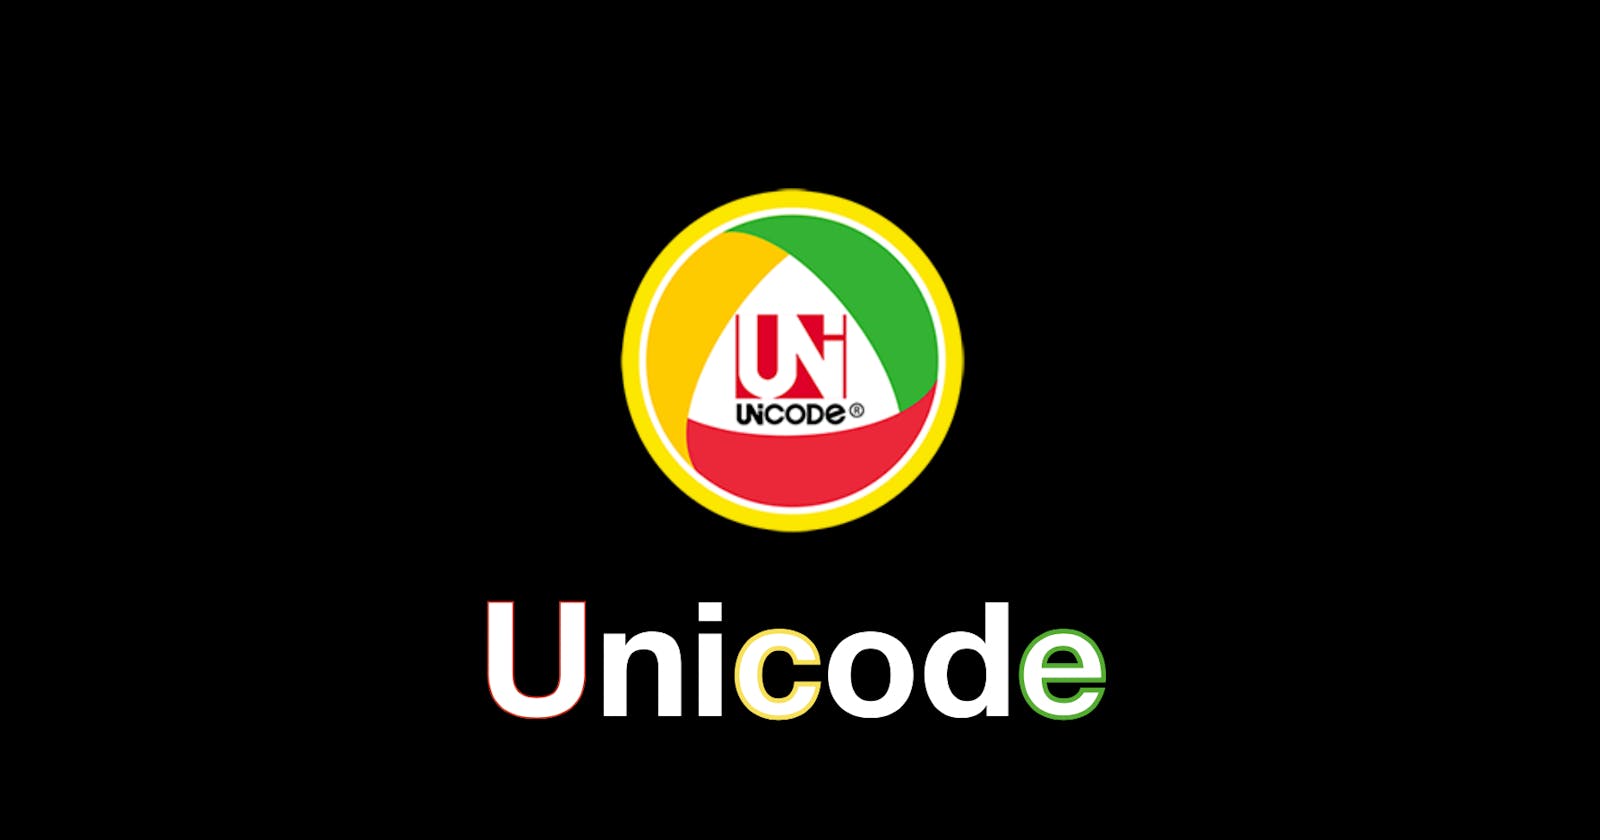 Unicode ဘာကြောင့် သုံးသင့်တာလဲ